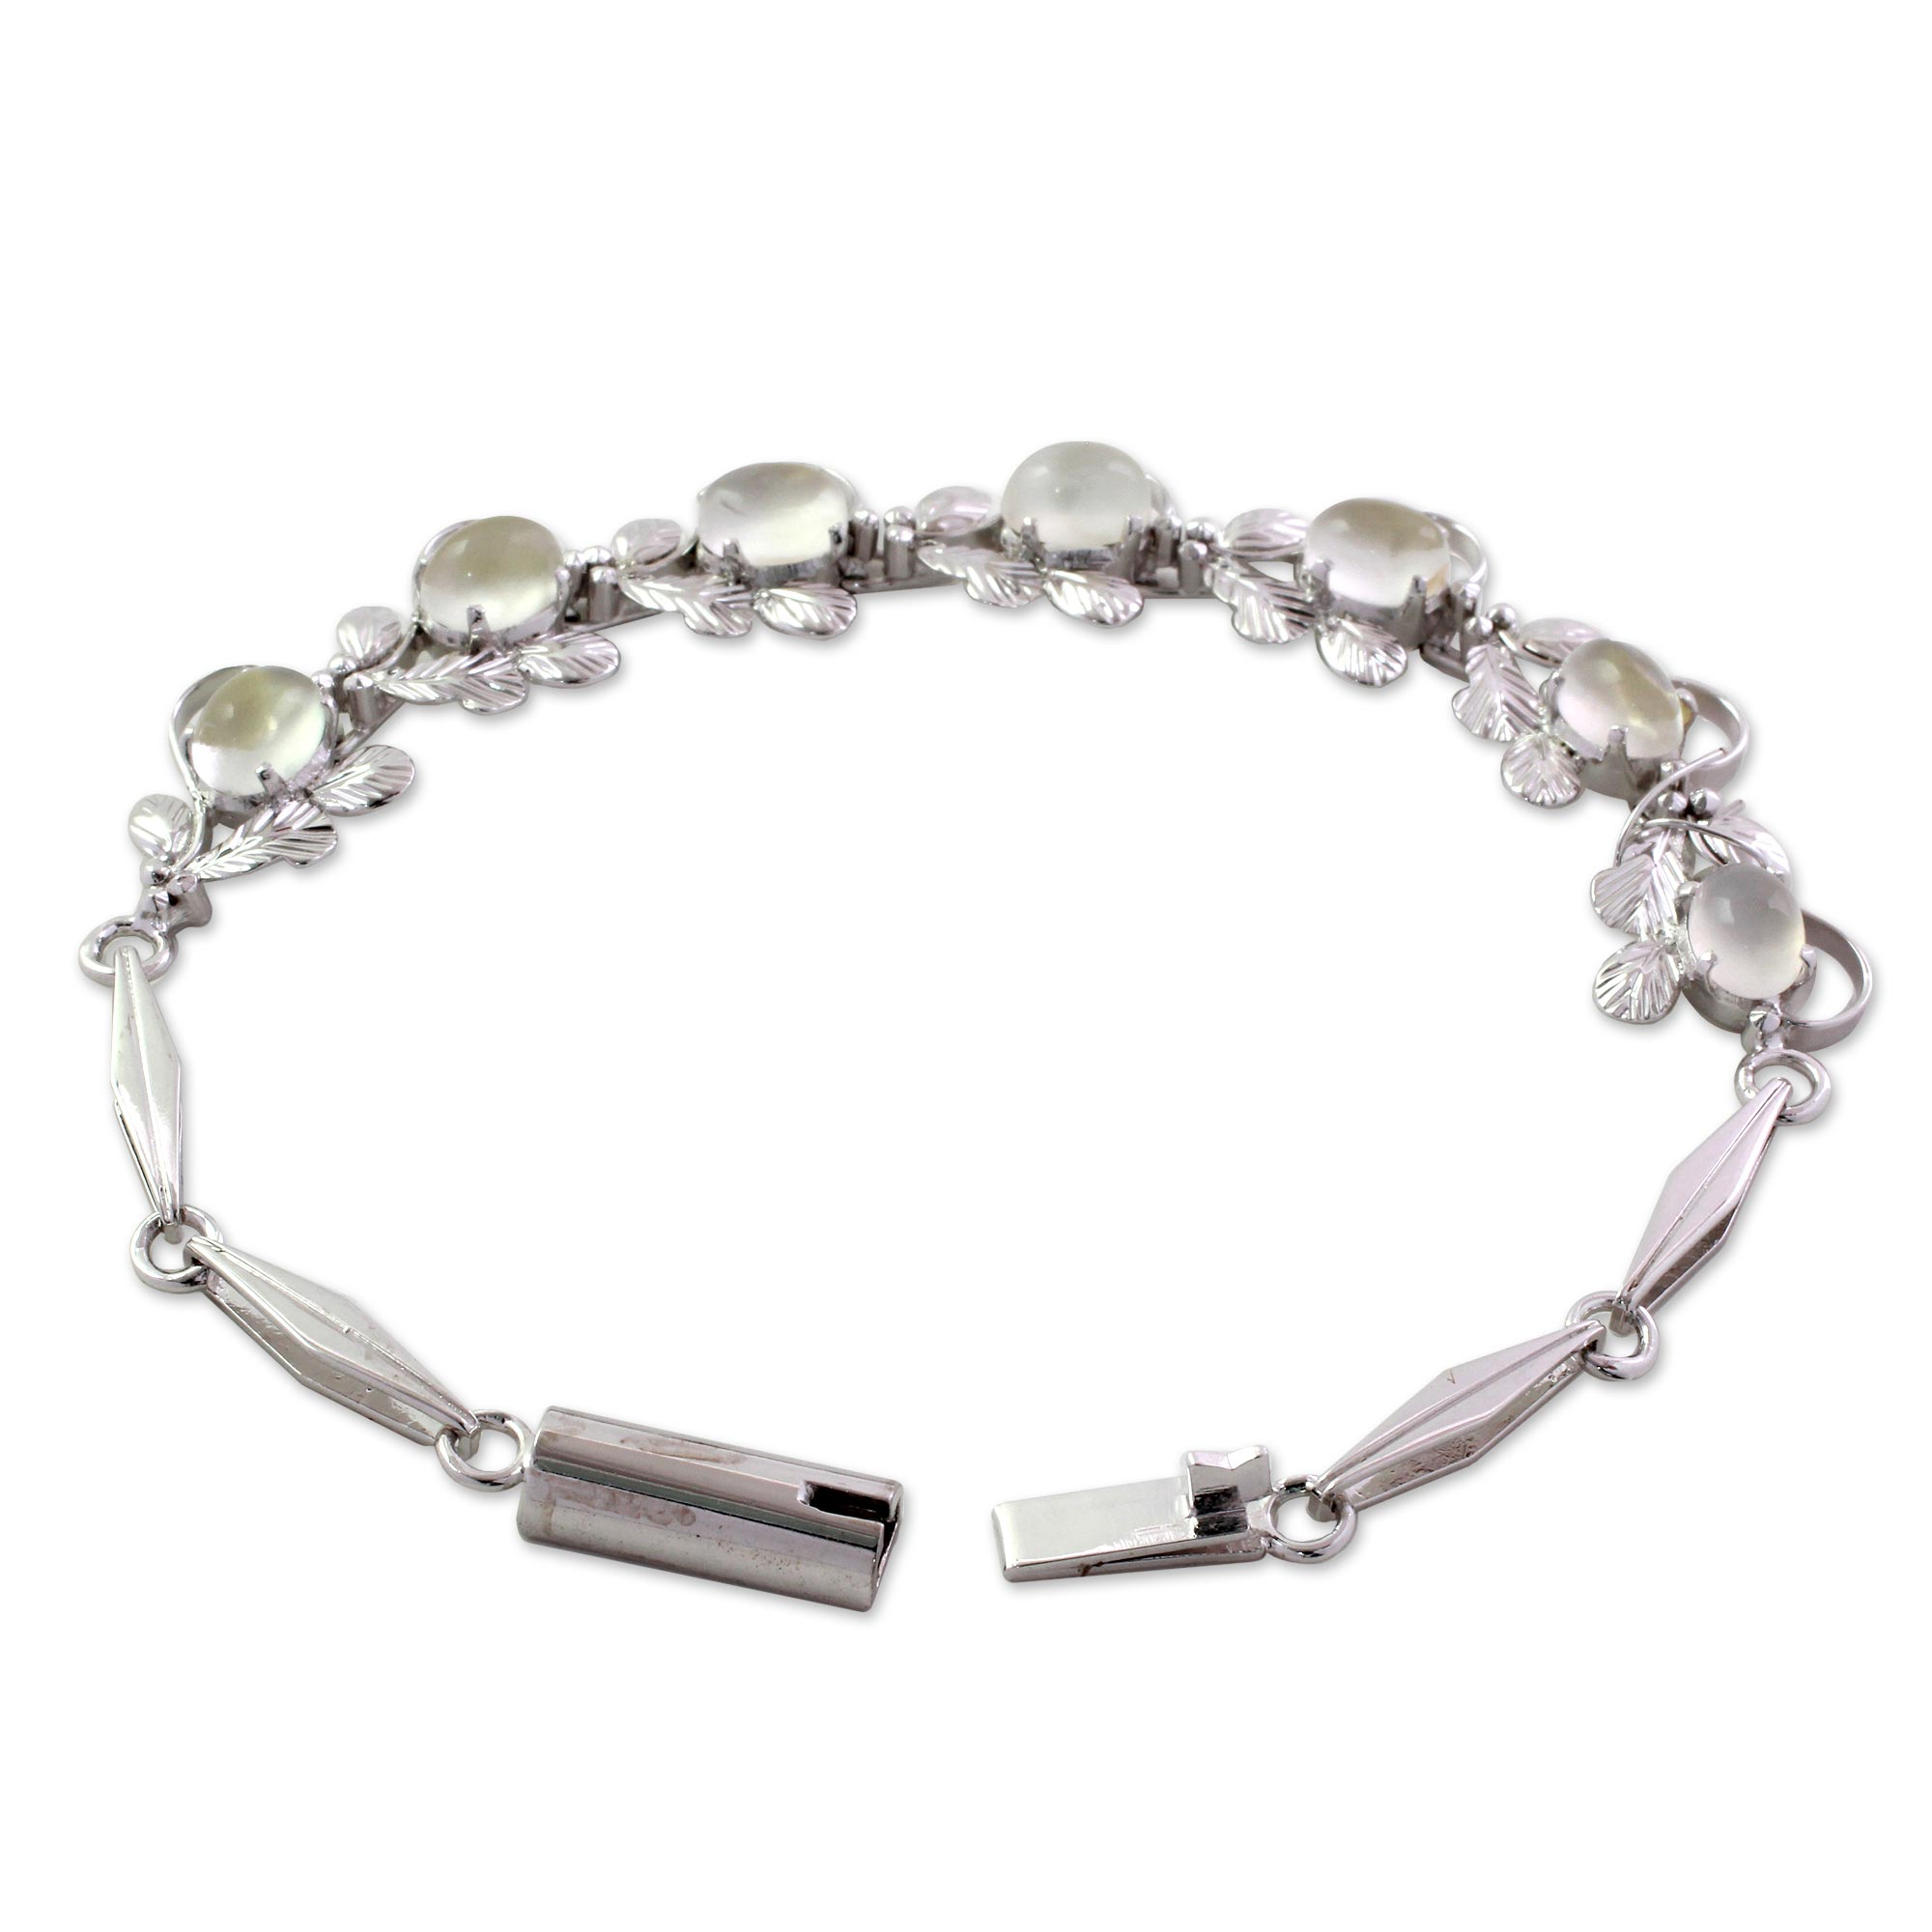 Floral Sterling Silver Link Moonstone Bracelet - Misty Affair | NOVICA